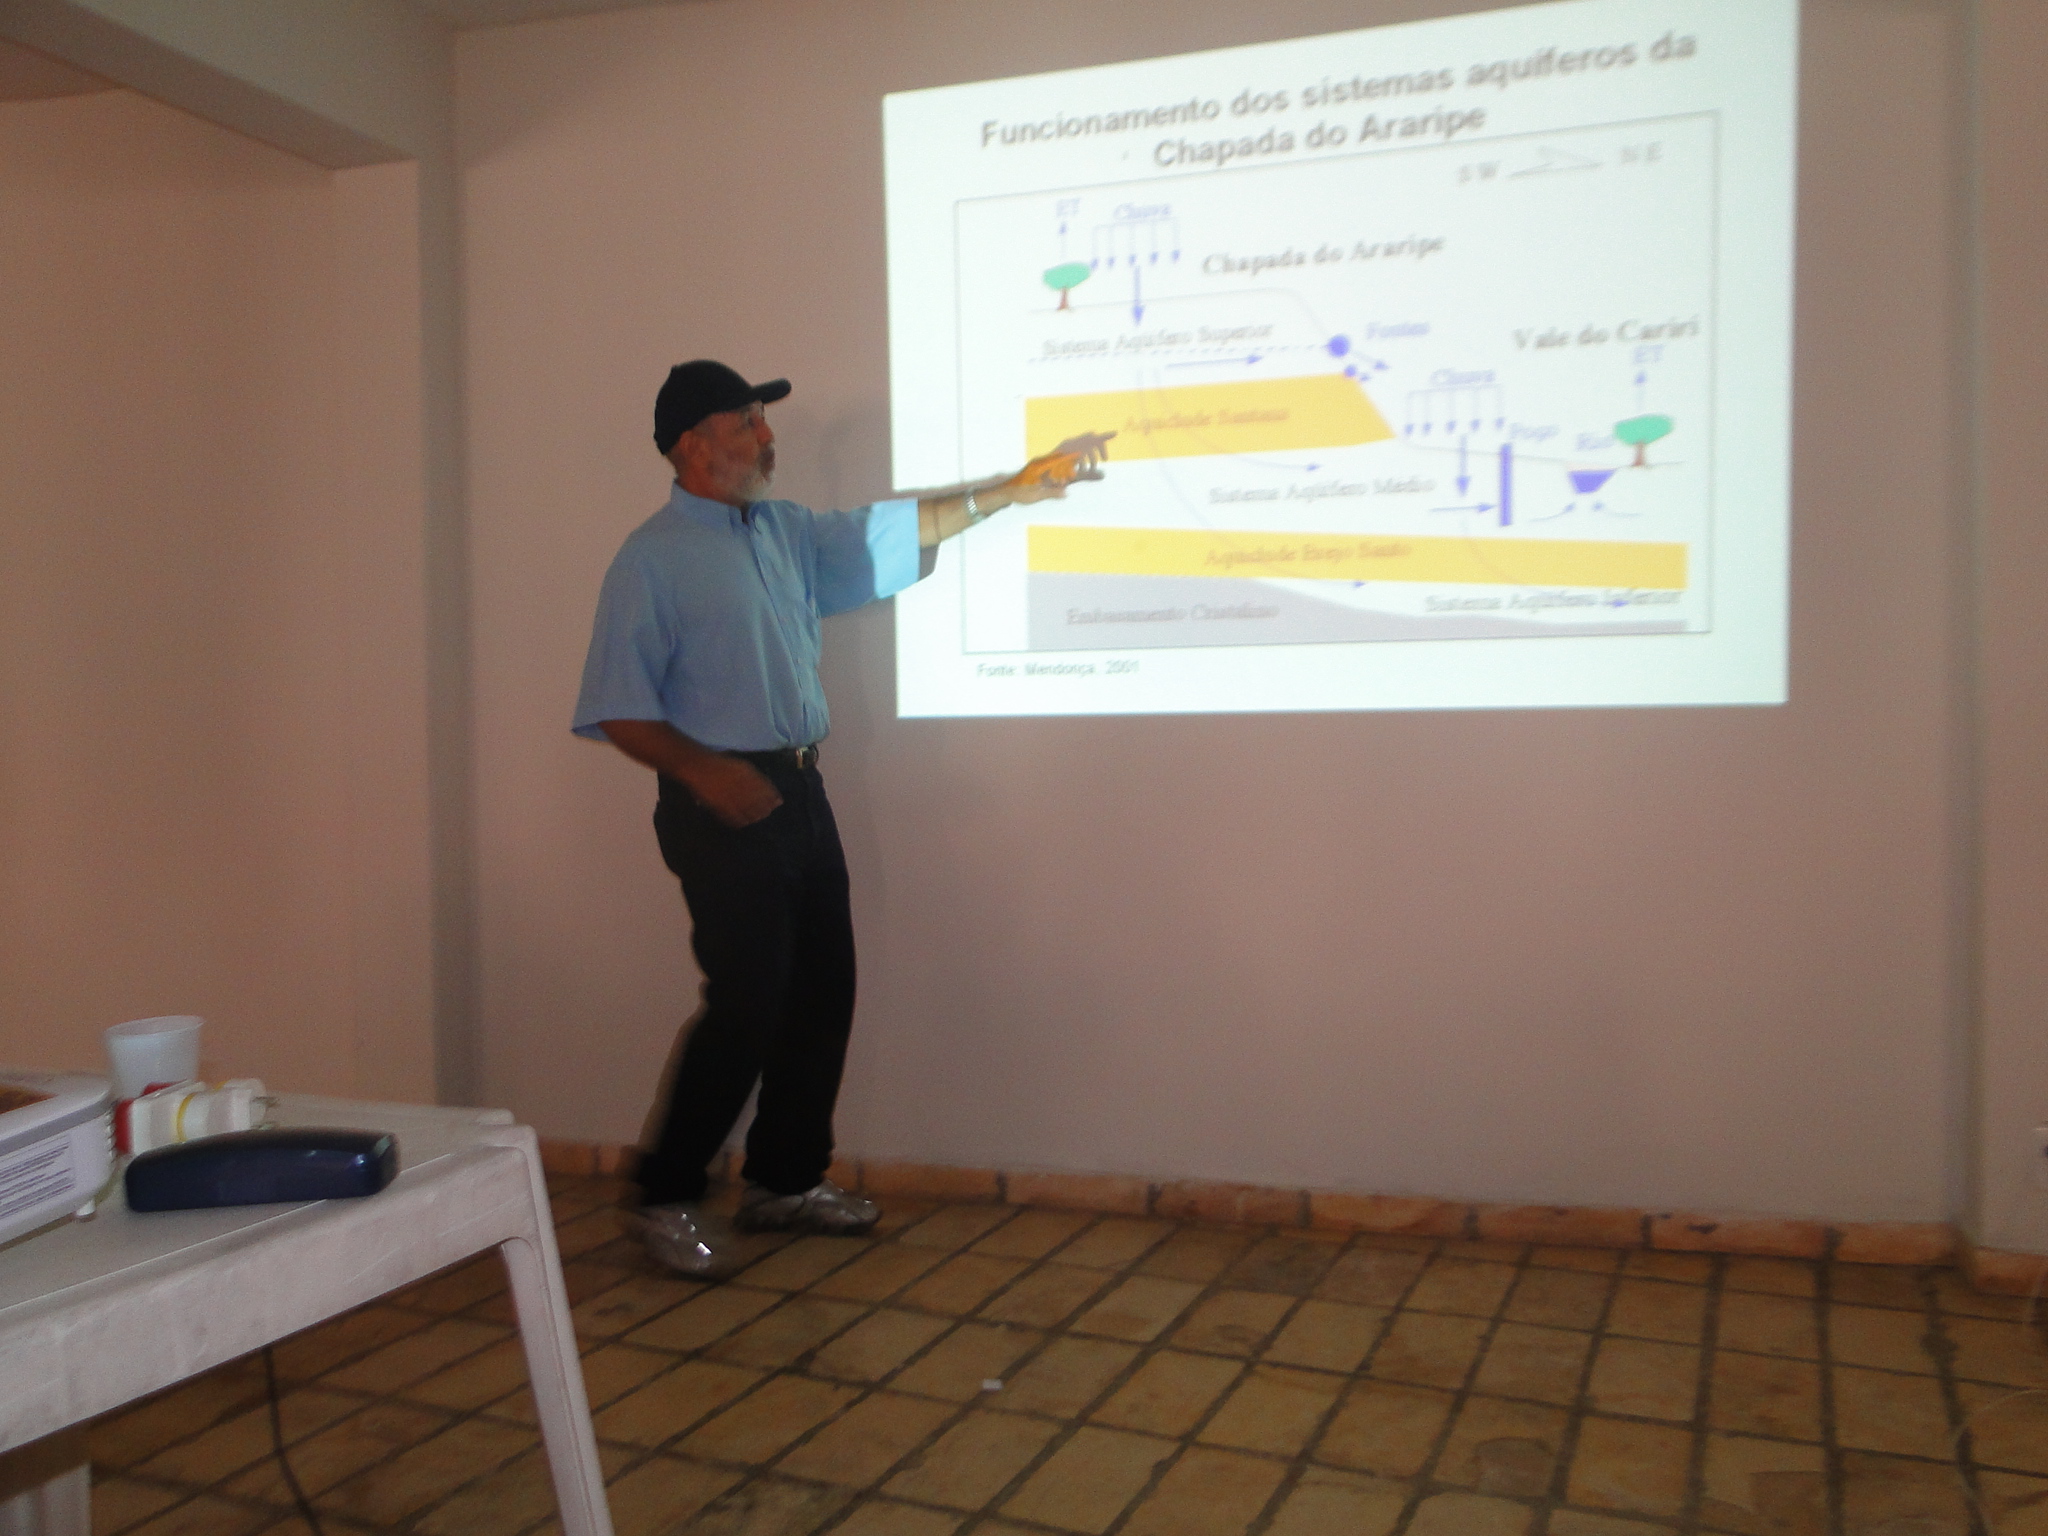 Câmara Técnica discute perfuração de poços na Chapada do Araripe